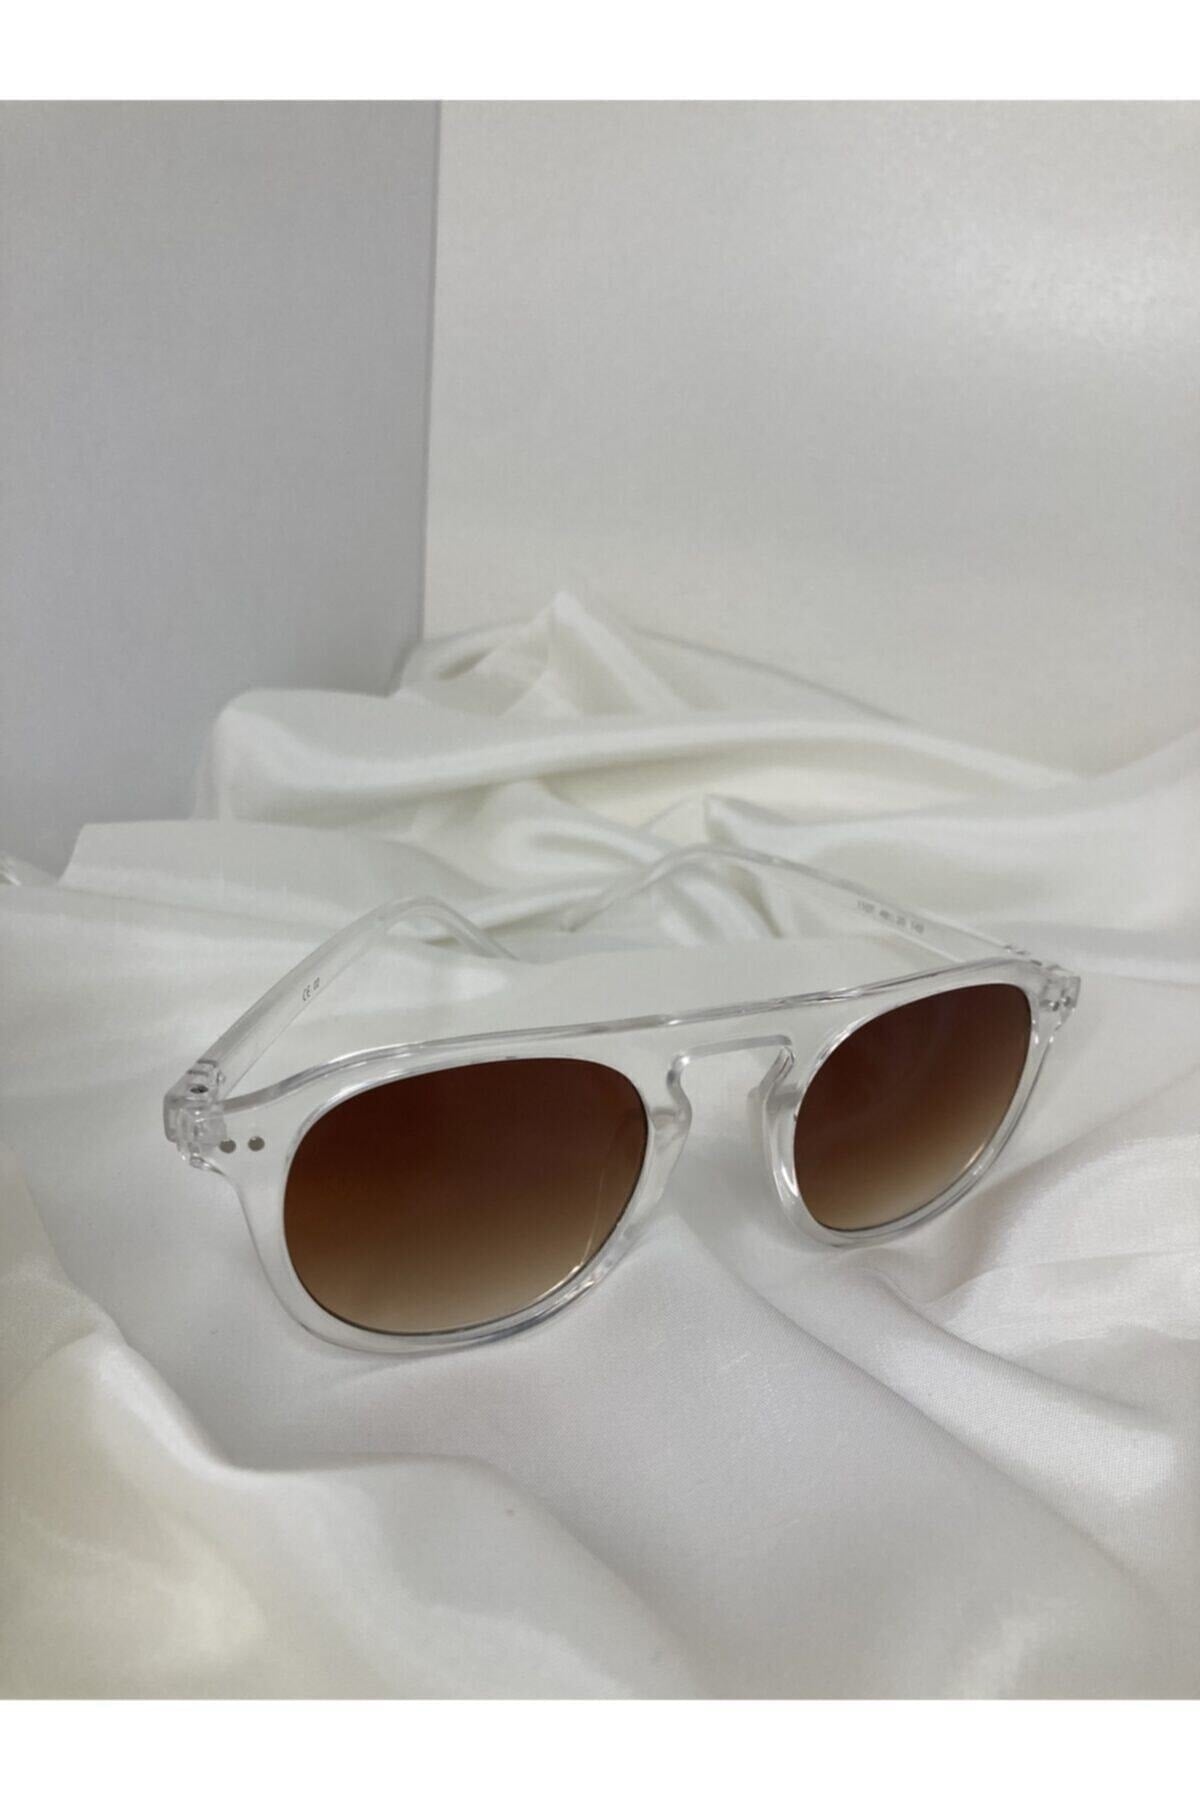 Unisex Vintage Style Sunglasses